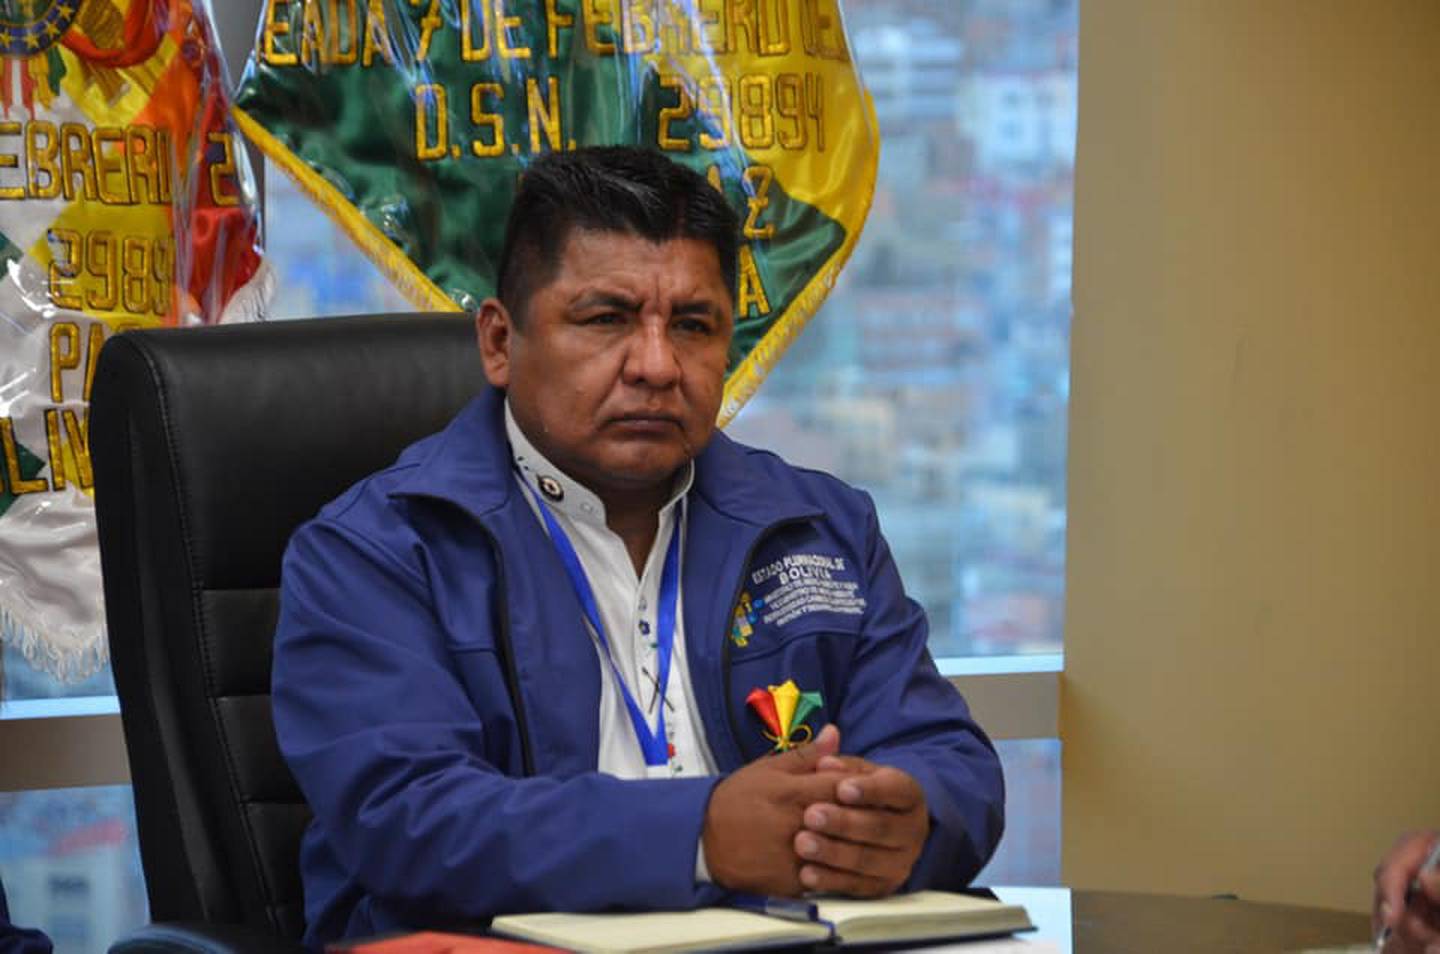 Fuente de la imagen: Gobierno de Bolivia.